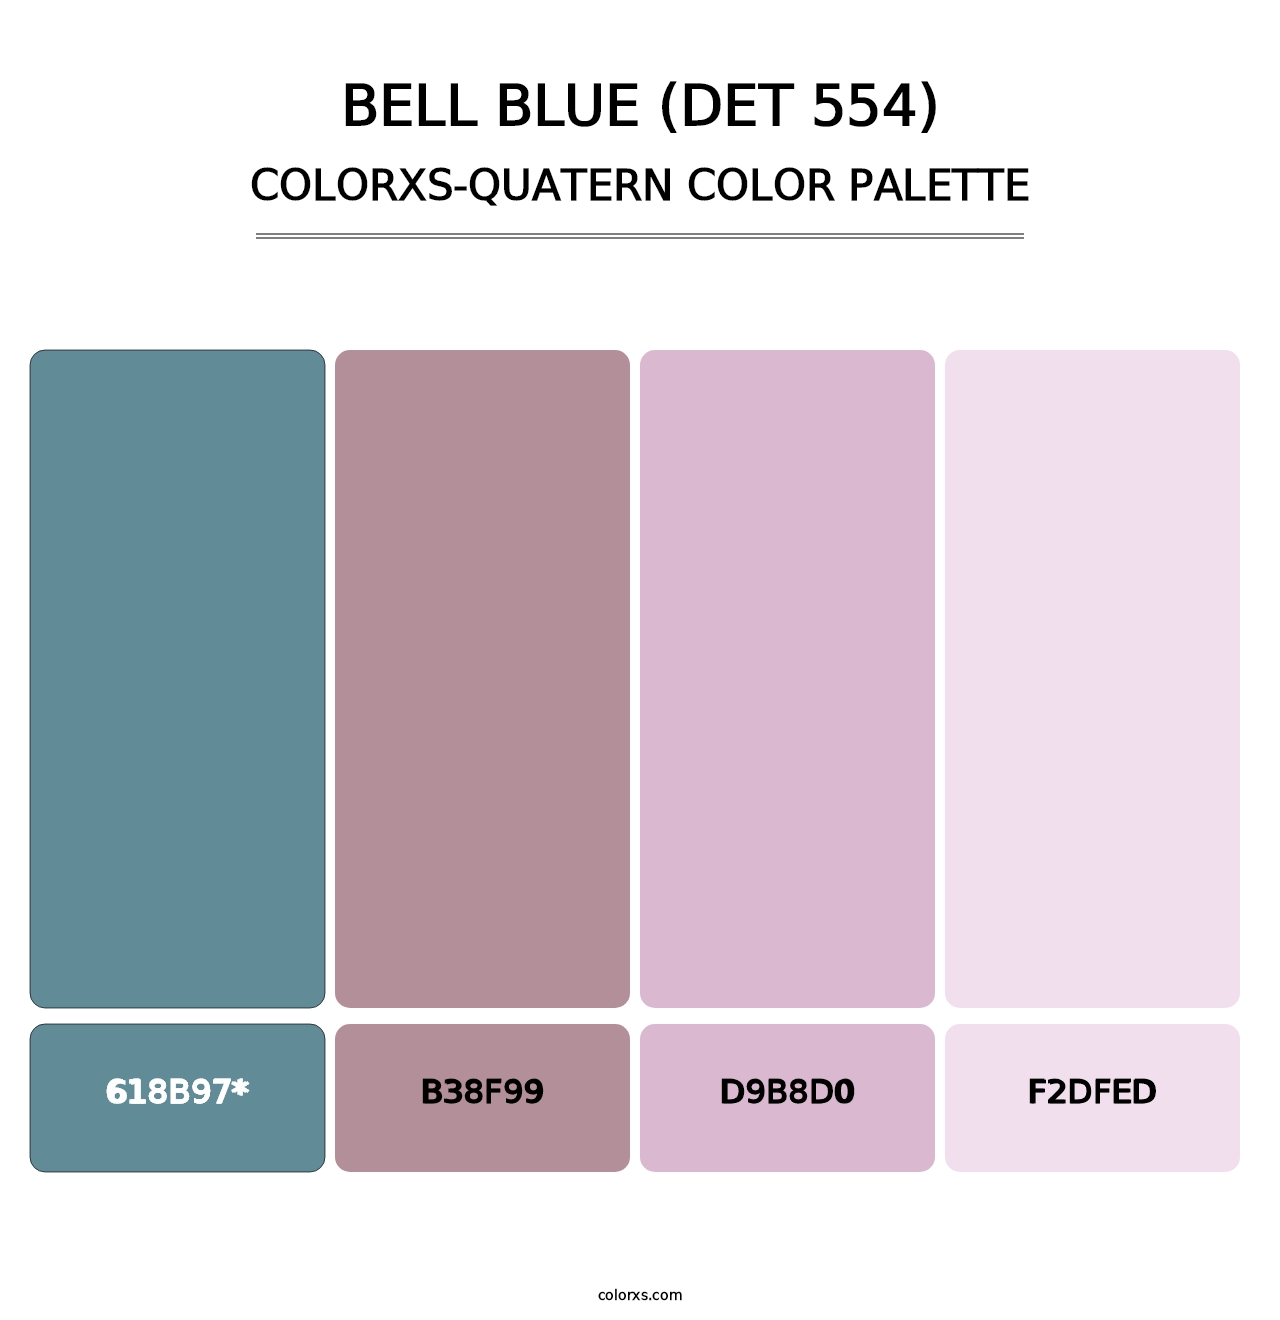 Bell Blue (DET 554) - Colorxs Quatern Palette